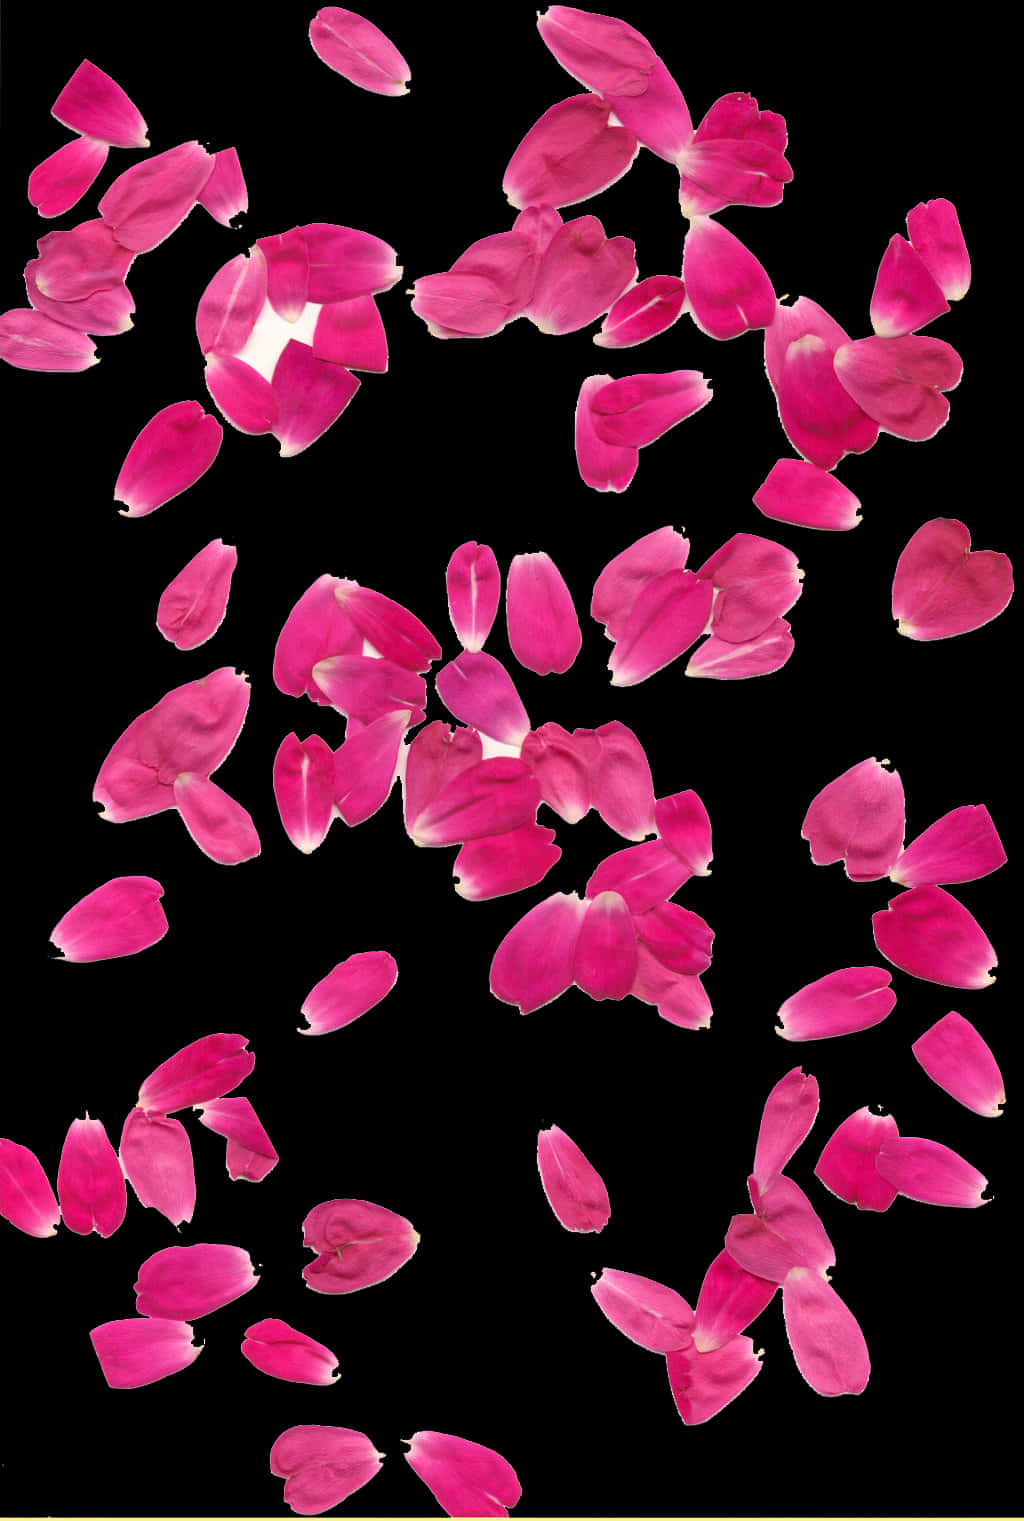 Pink Rose Petals Falling Black Background PNG image